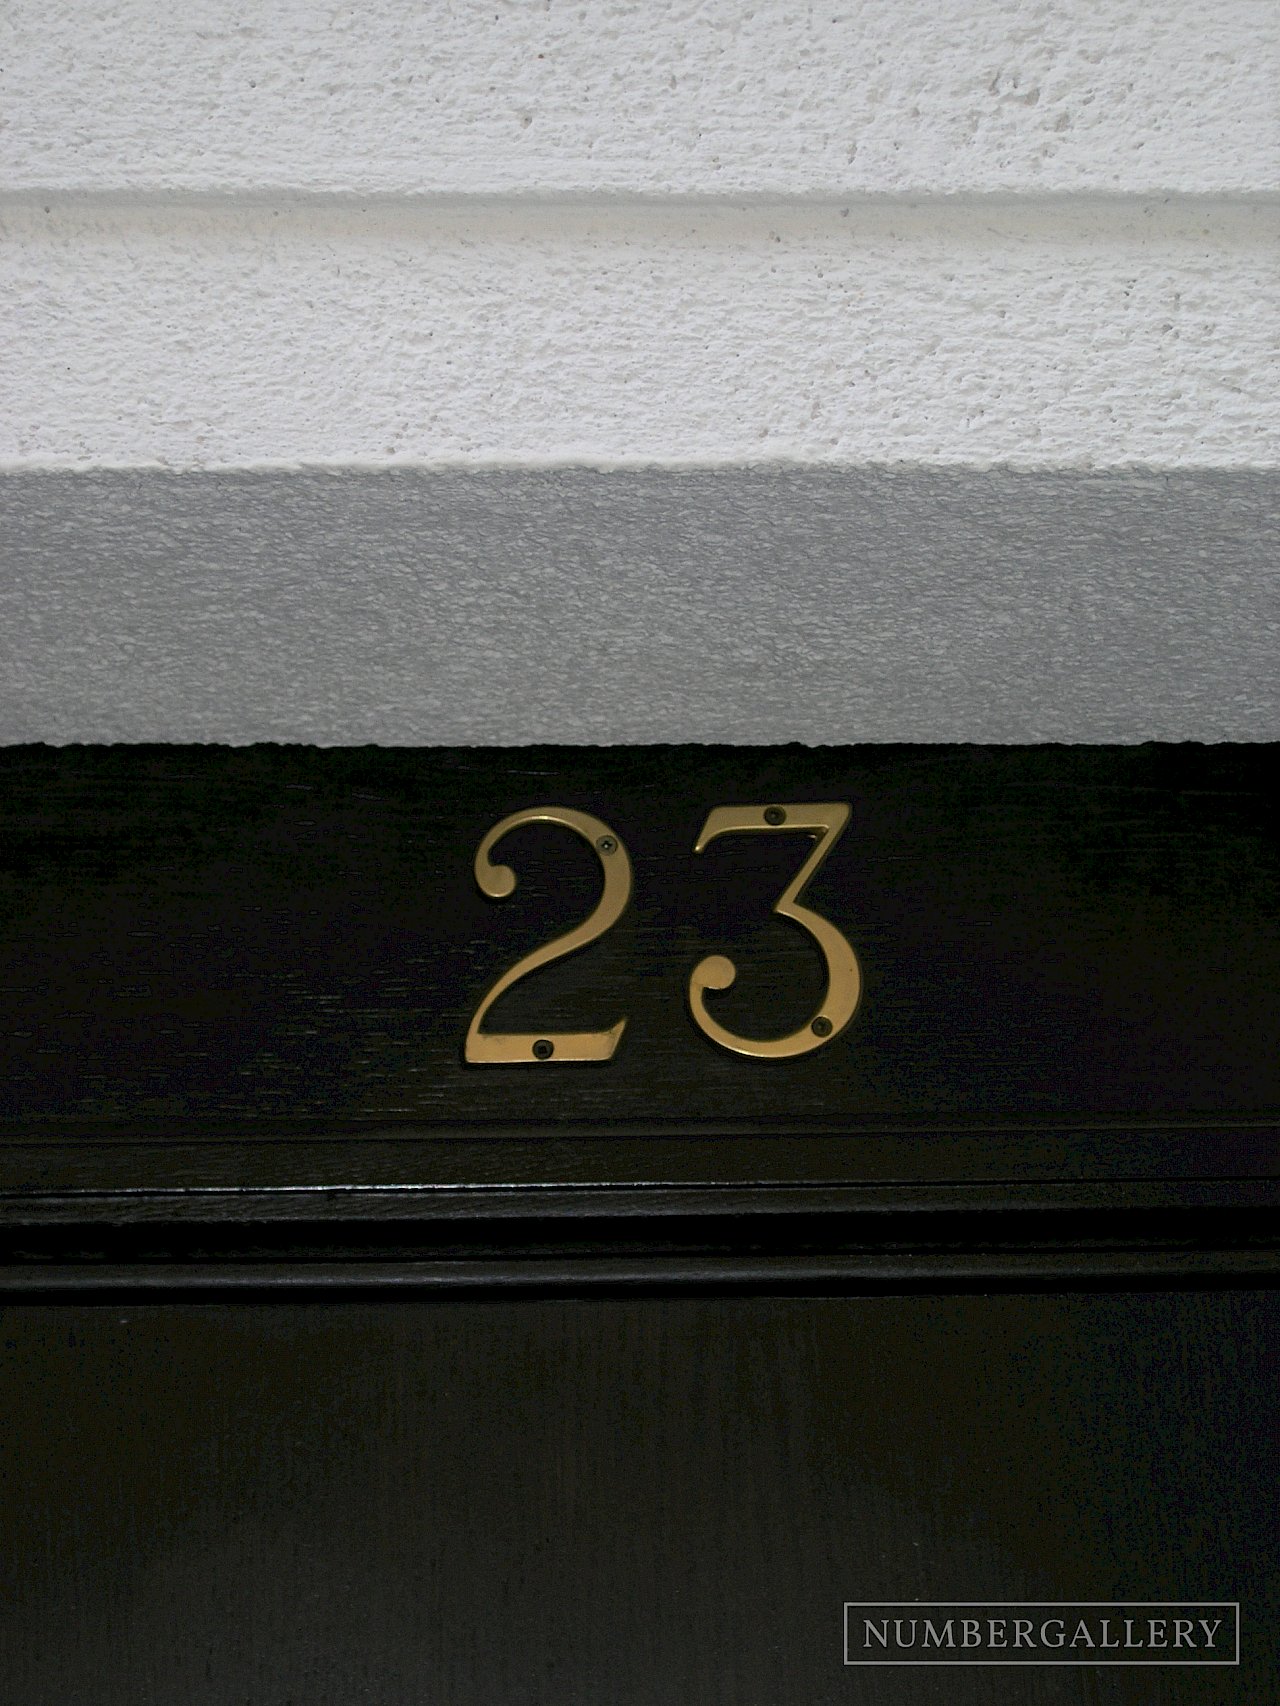 Hausnummer in Bratislava